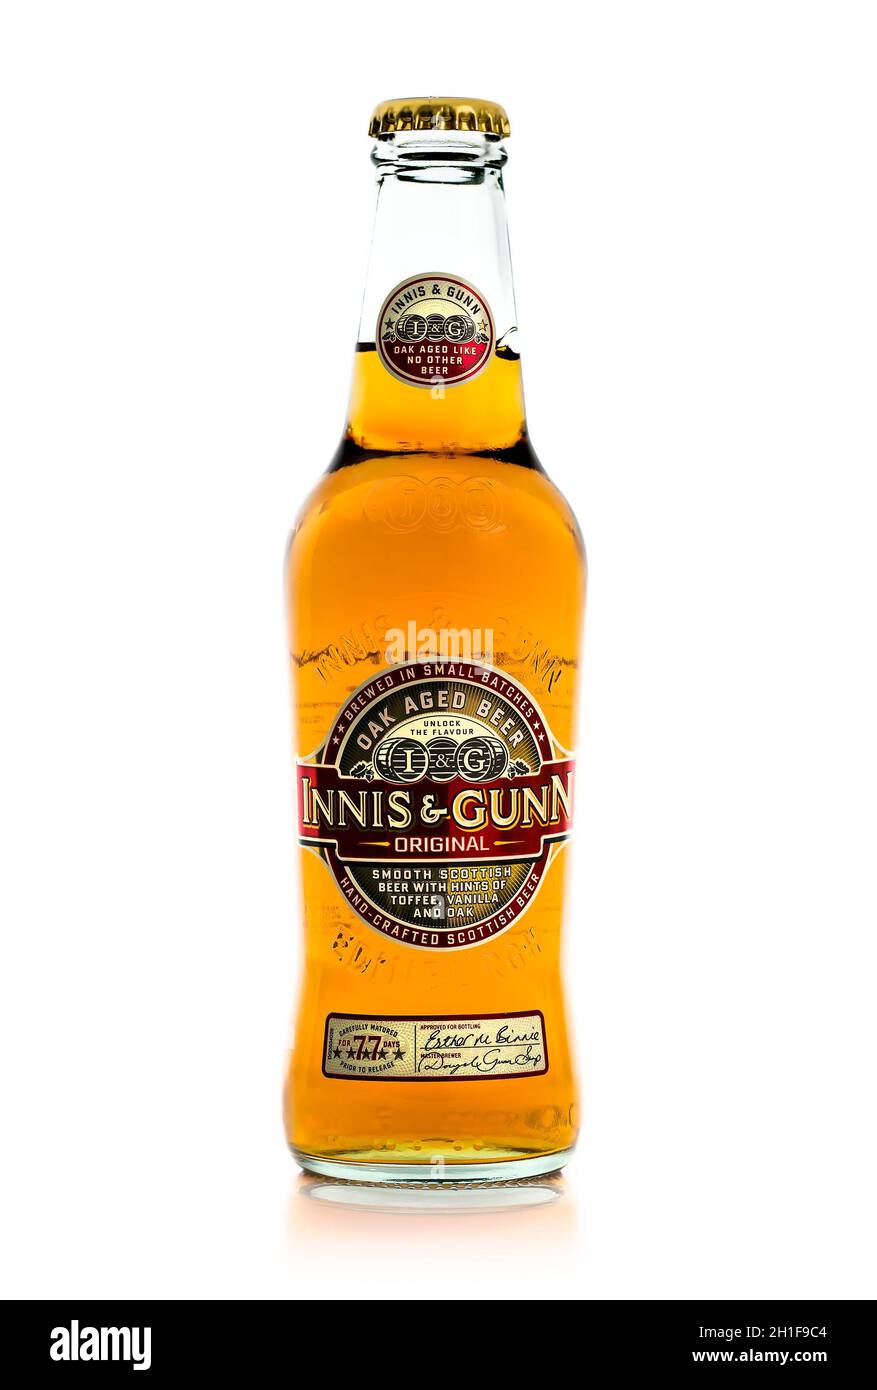 SWINDON, UK - AUGUST 18, 2014: Bottle of Innis & Gunn Oak Aged Beer on a White Background Stock Photo